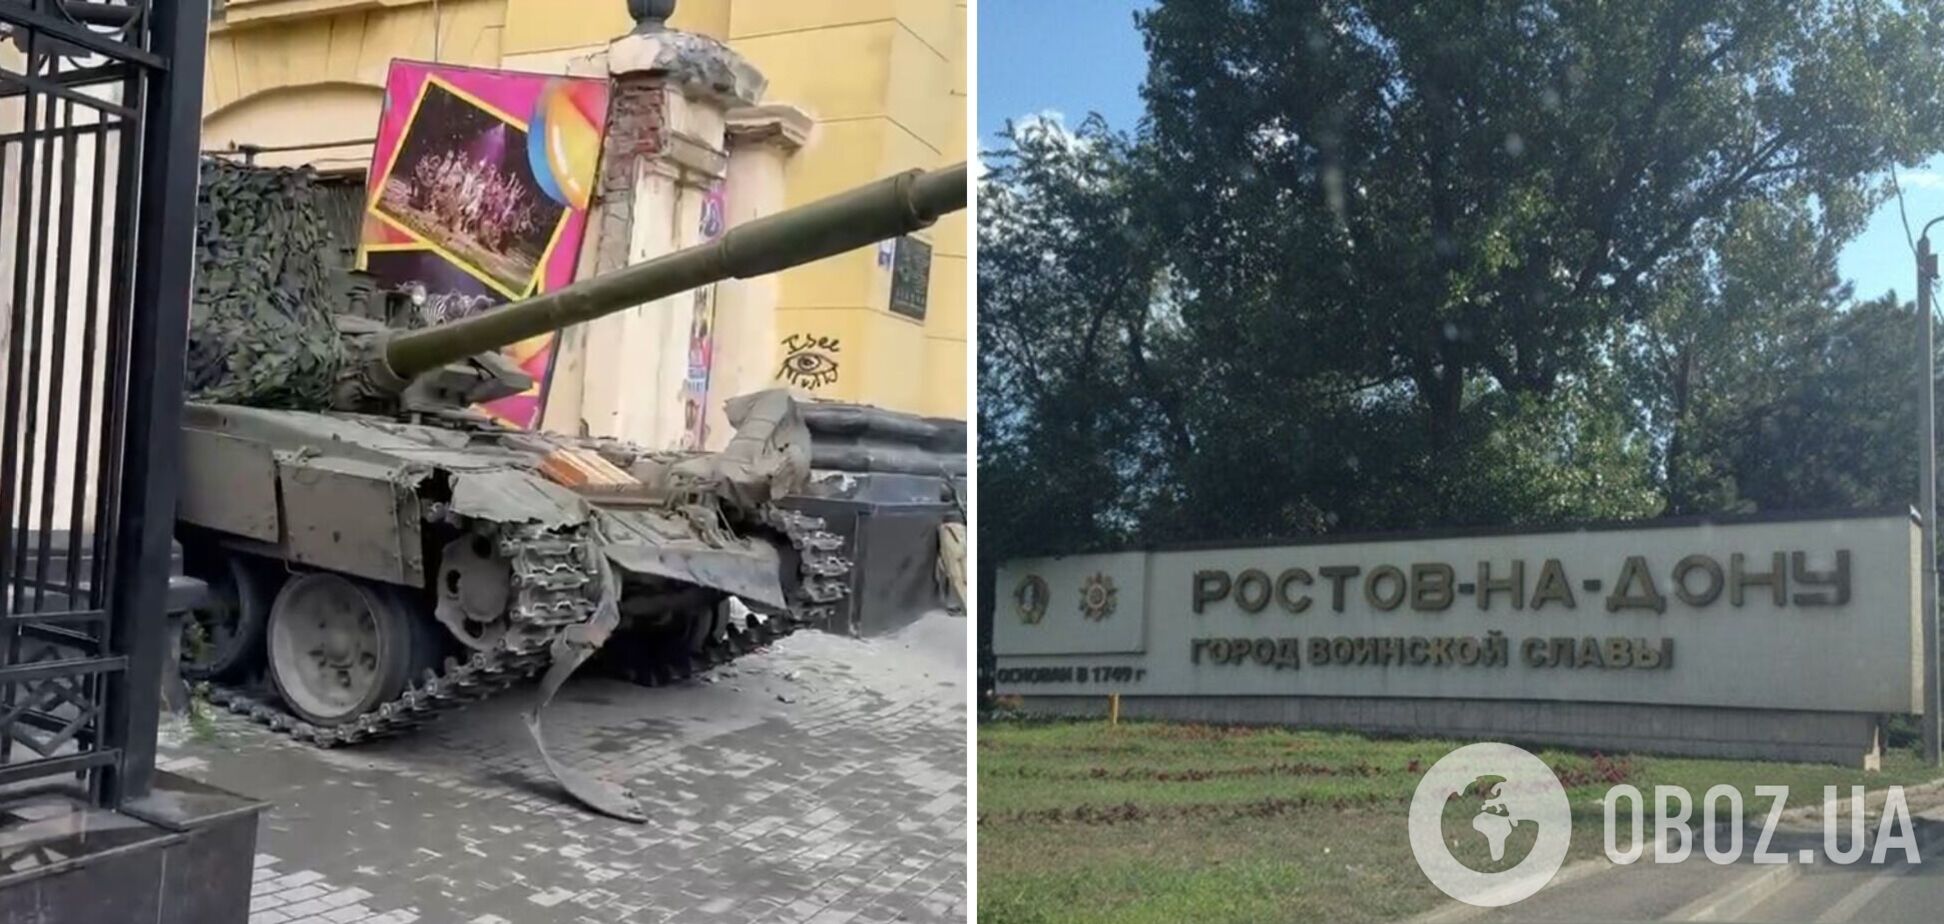 В Ростове во время 'переворота' танк застрял в воротах цирка: говорят, что 'по плану'. Видео